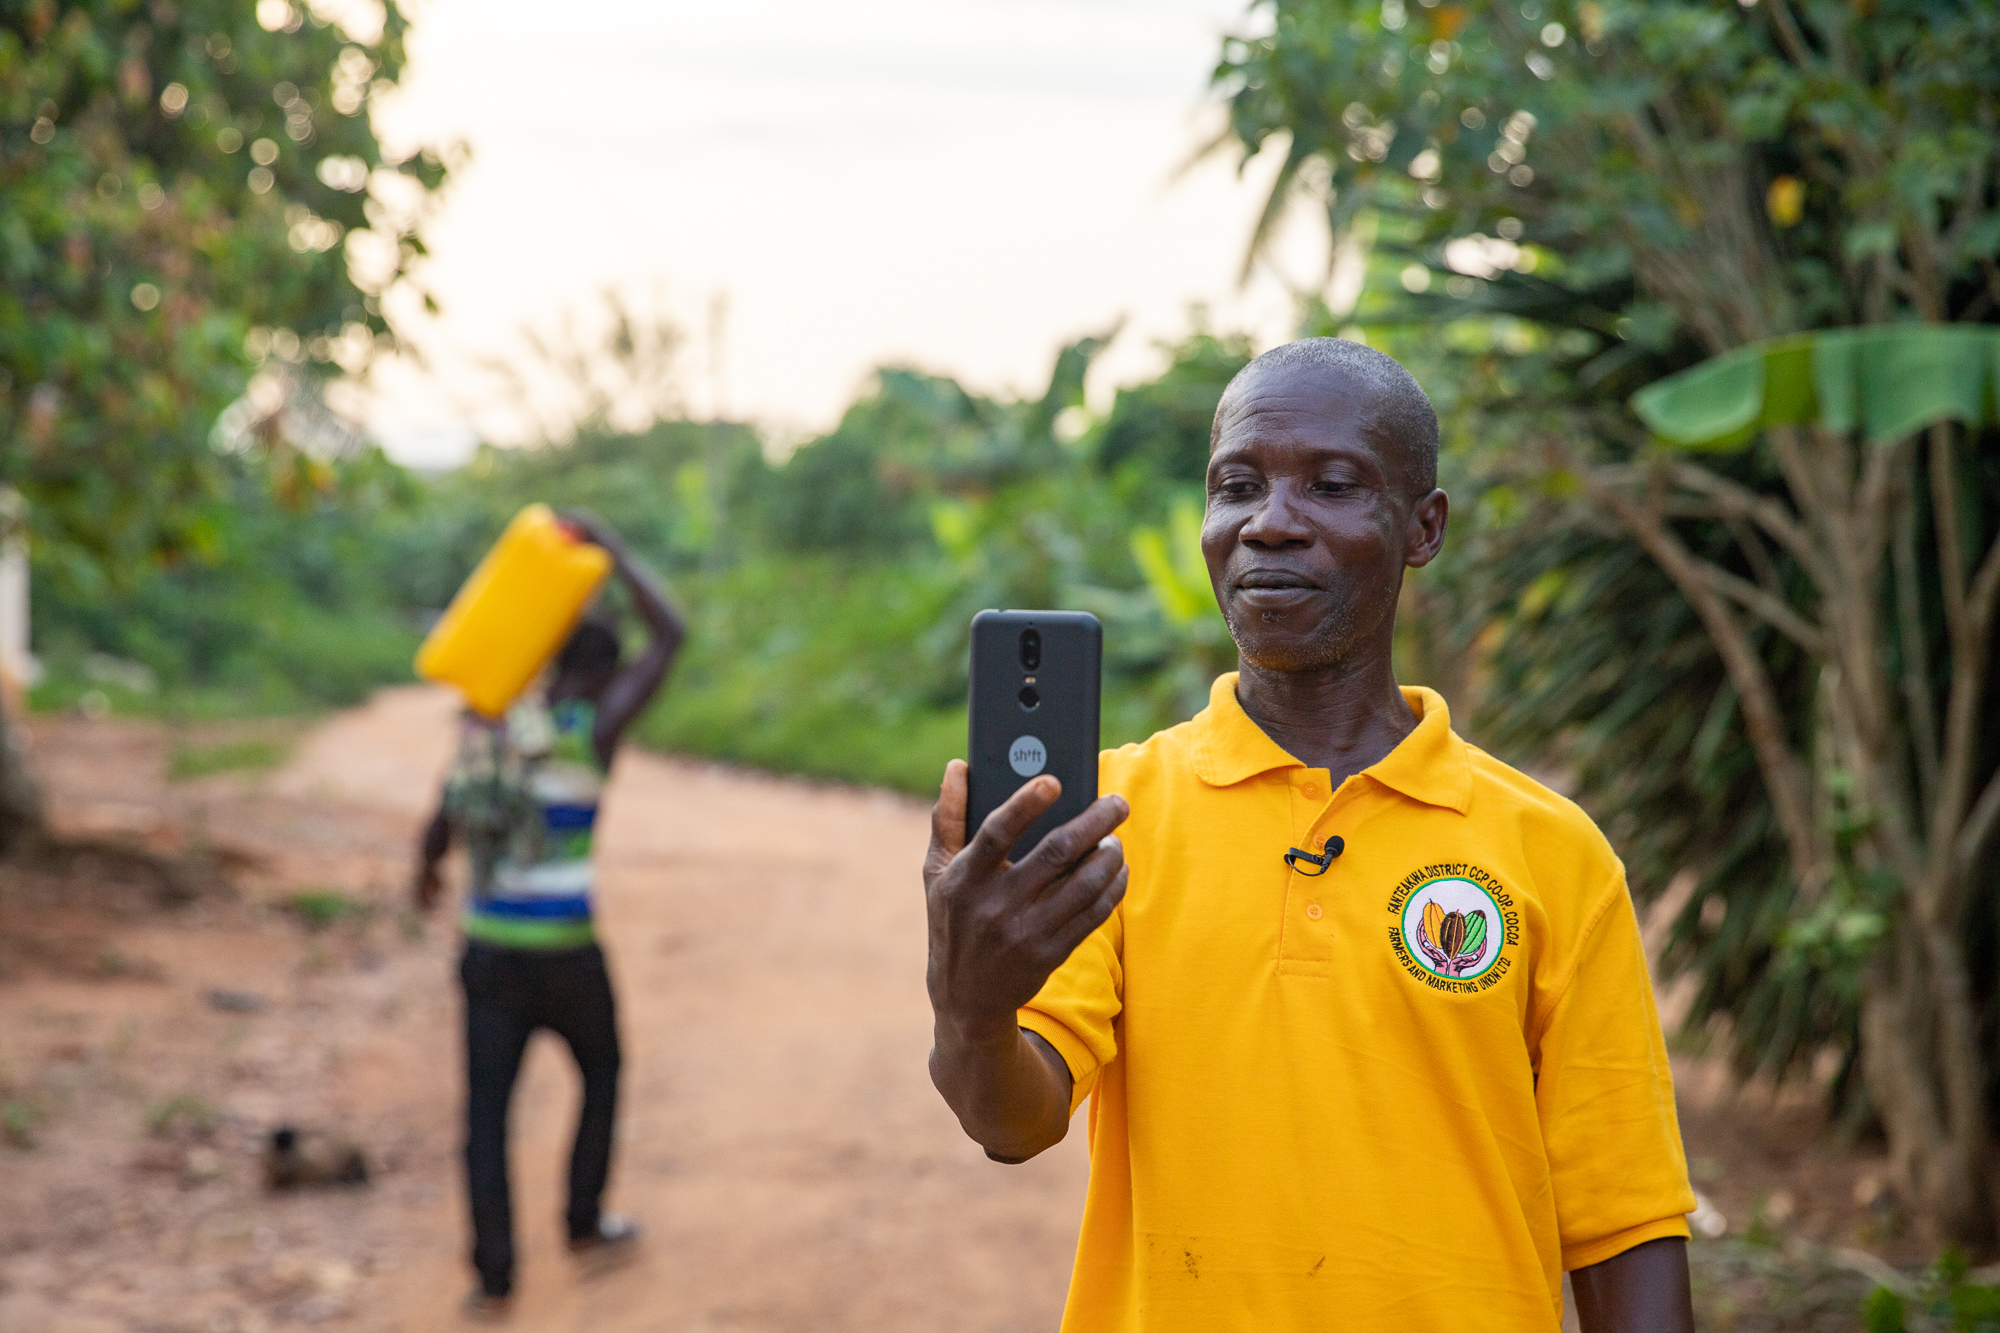 George Ansah, Kakaobauer beim Aufzeichnen von Impact Diaries